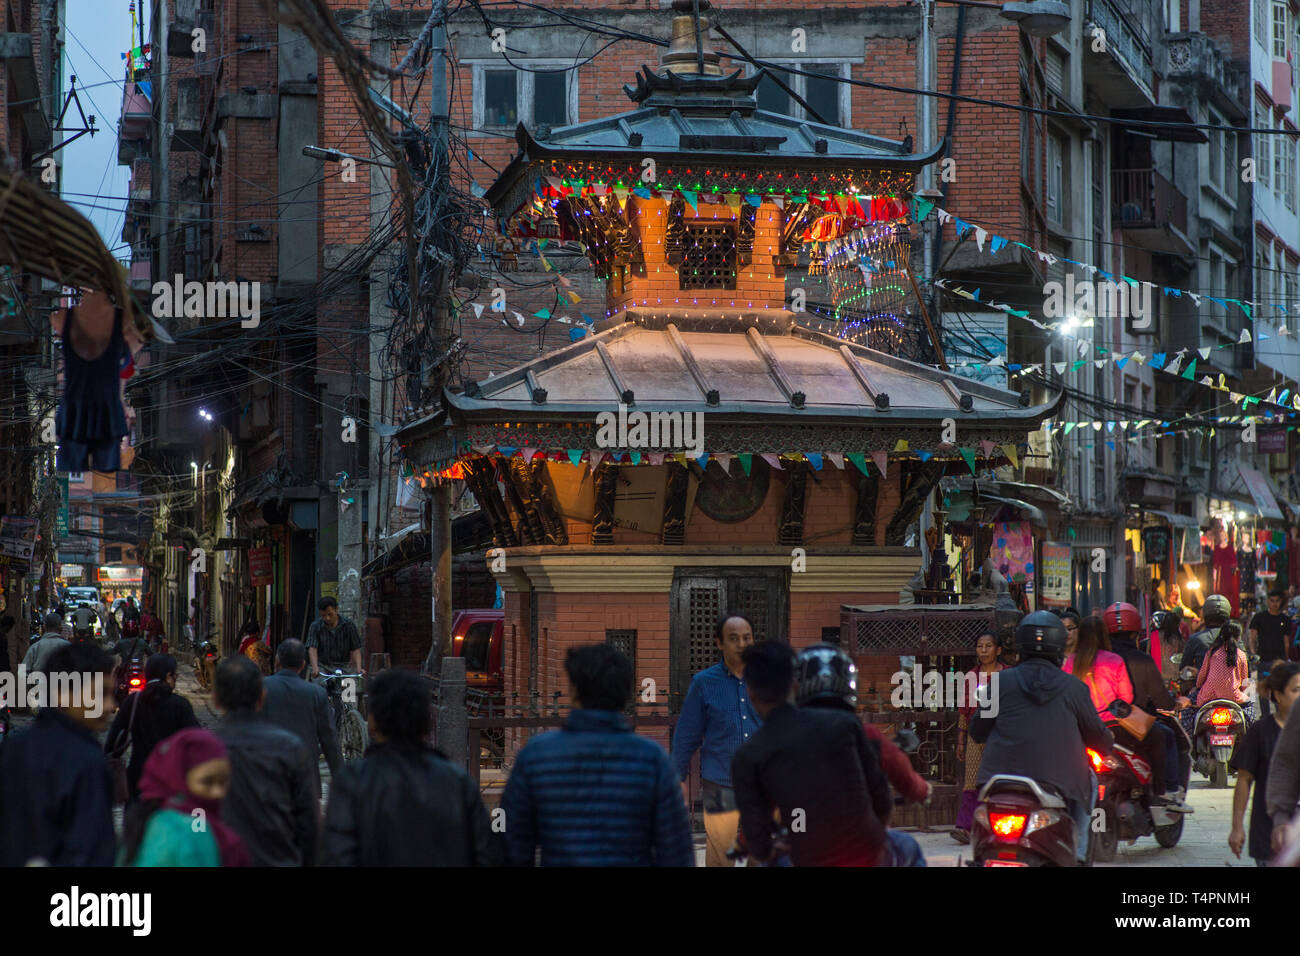 Eine geschäftige Straße mit einem buddhistischen Tempel in der Innenstadt von Kathmandu, Nepal, am späten Nachmittag. Stockfoto